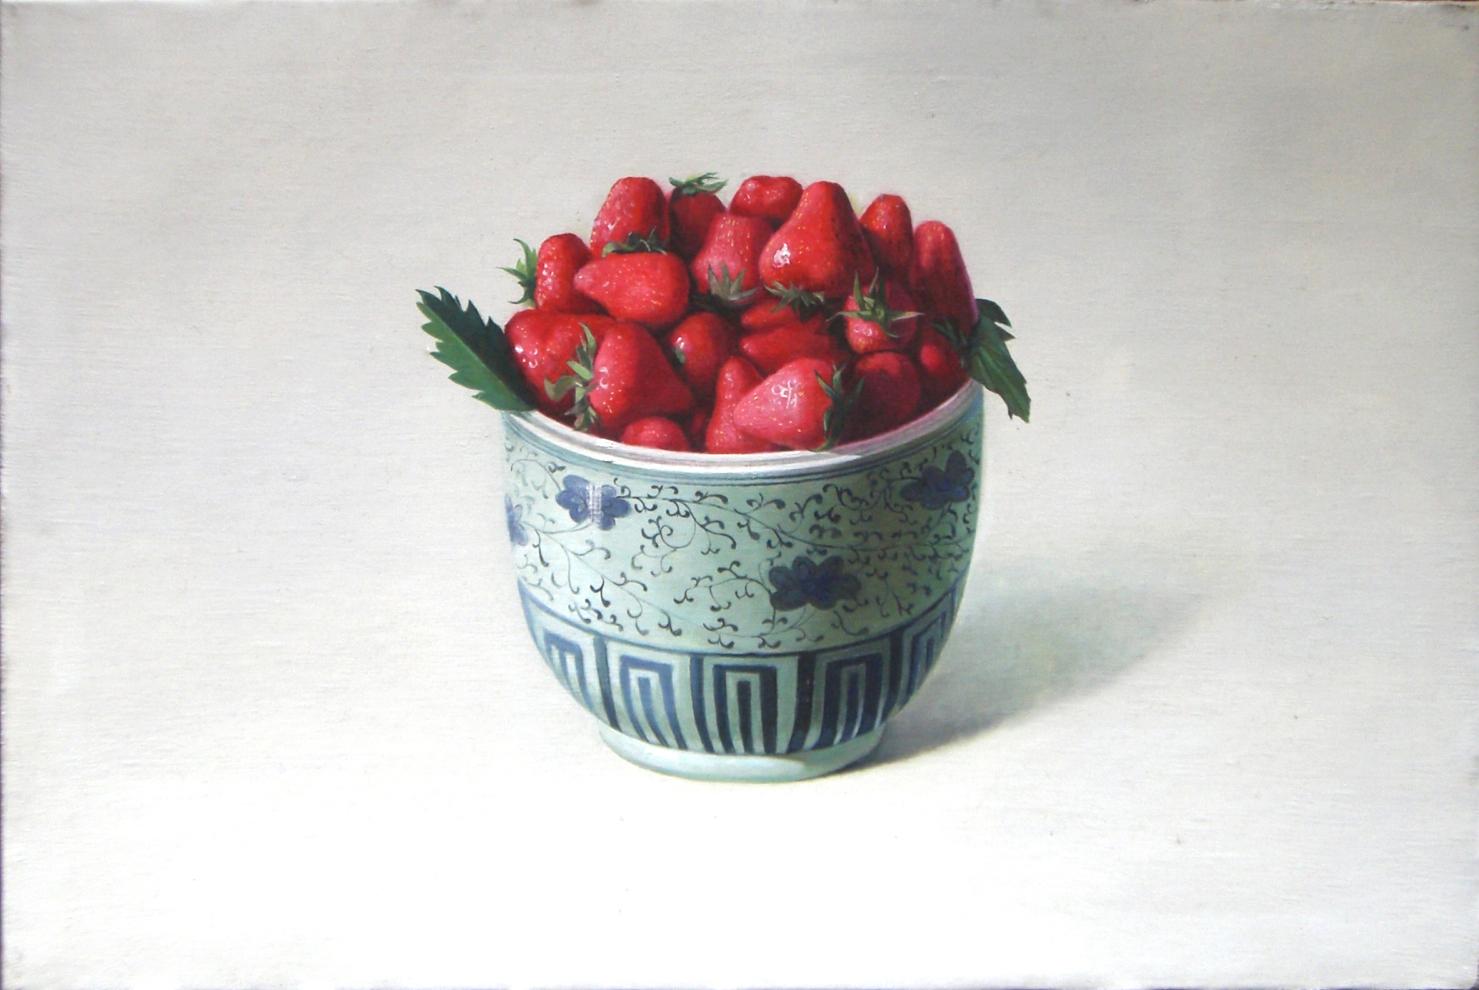 Strawberries est une huile sur toile originale réalisée par le peintre chinois Zhang Wei Guang (Mirror) en 2008.
Excellentes conditions.

Zhang Wei Guang, également appelé "miroir", est né à Helong Jang, en Chine, en 1968. Il a étudié à l'université